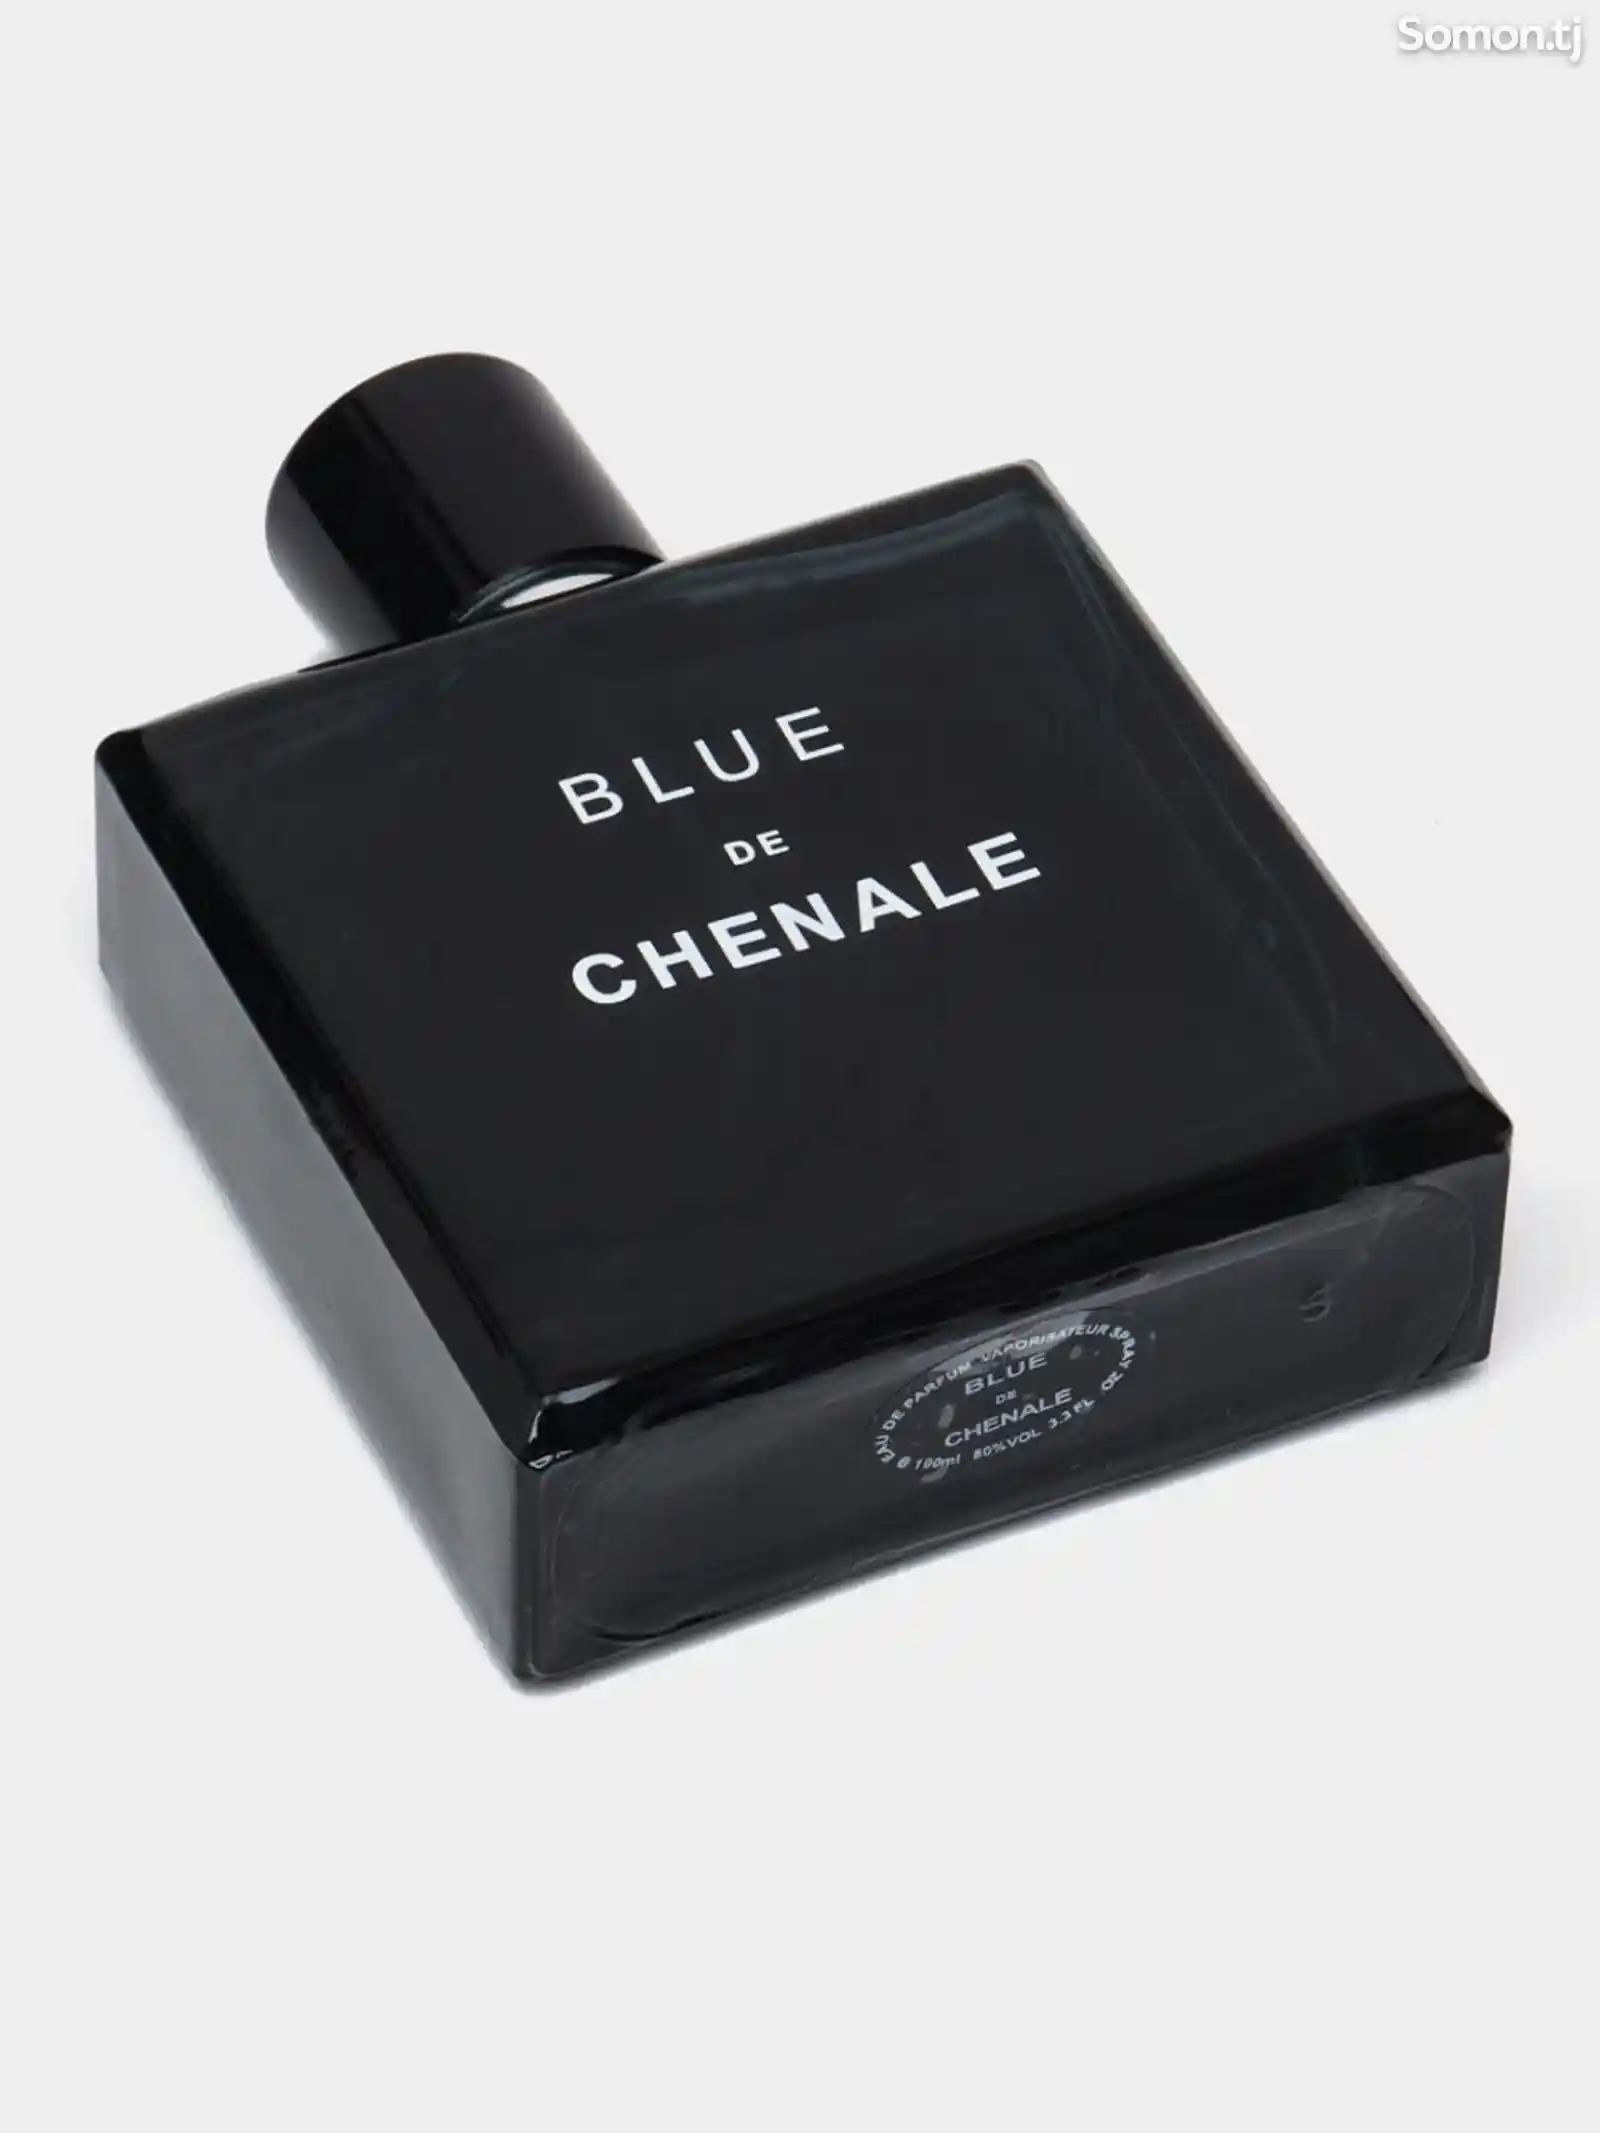 Парфюм blue de chenale люкс-3